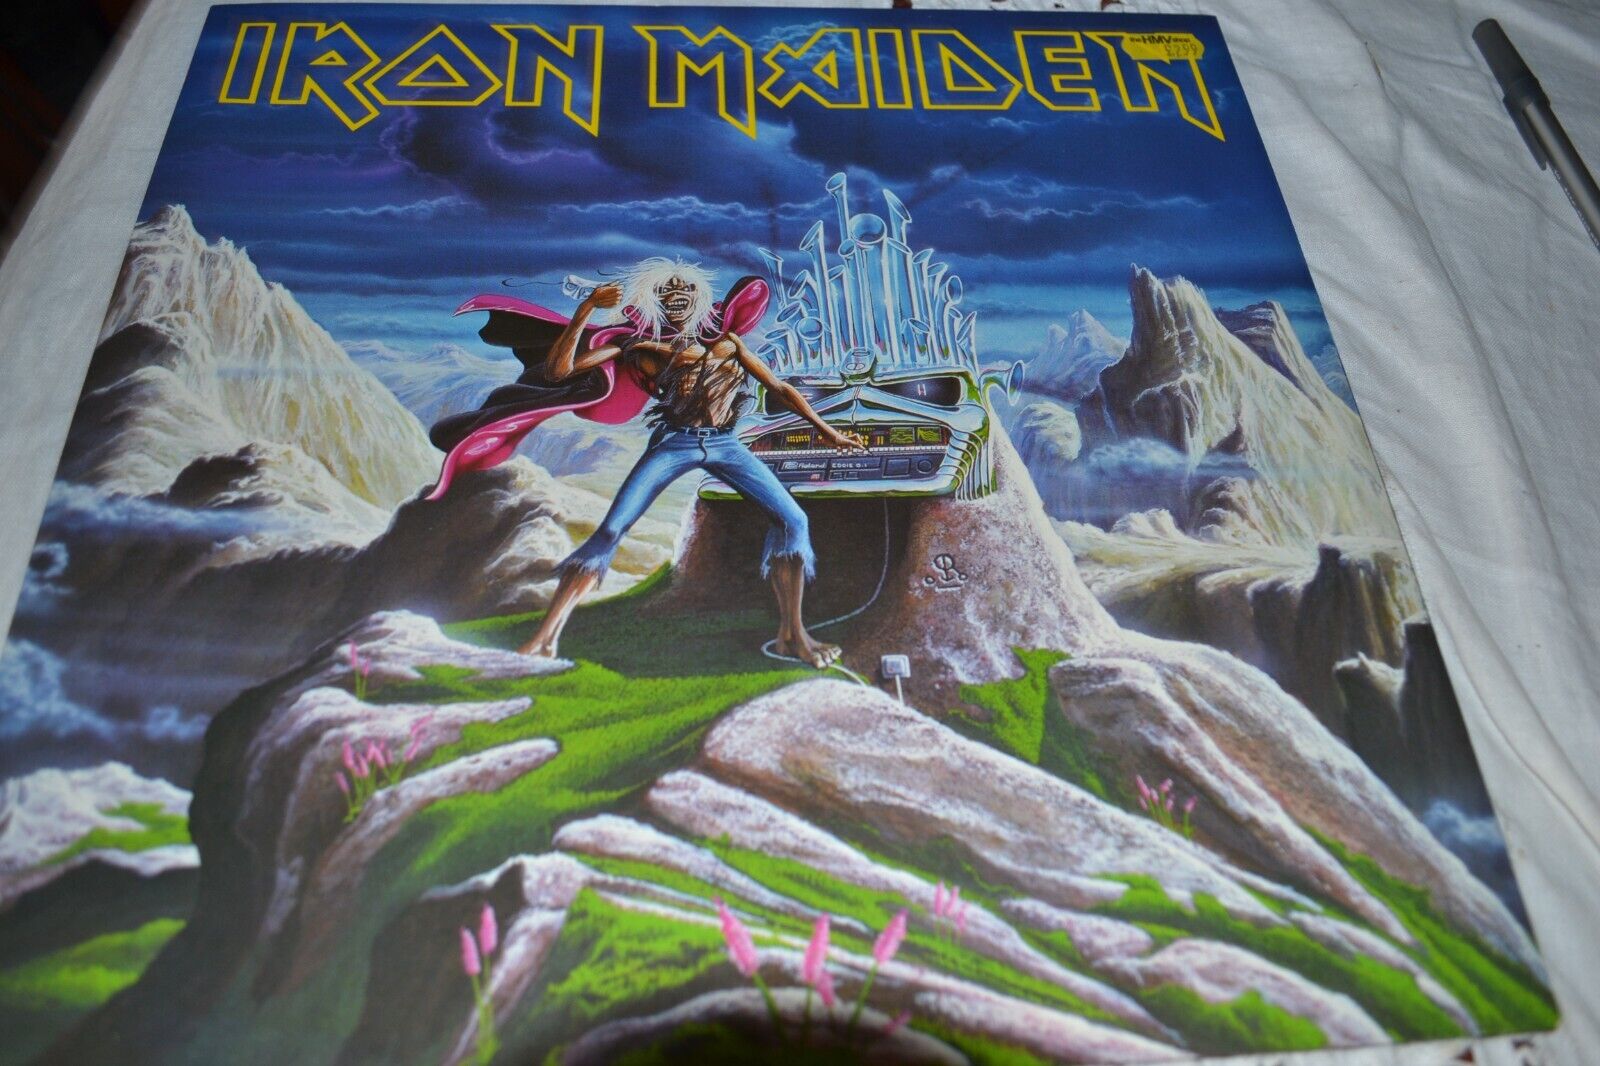 vinyl 12" maxi single - Iron Maiden - Run to the Hills - EMI 12EMI 5542